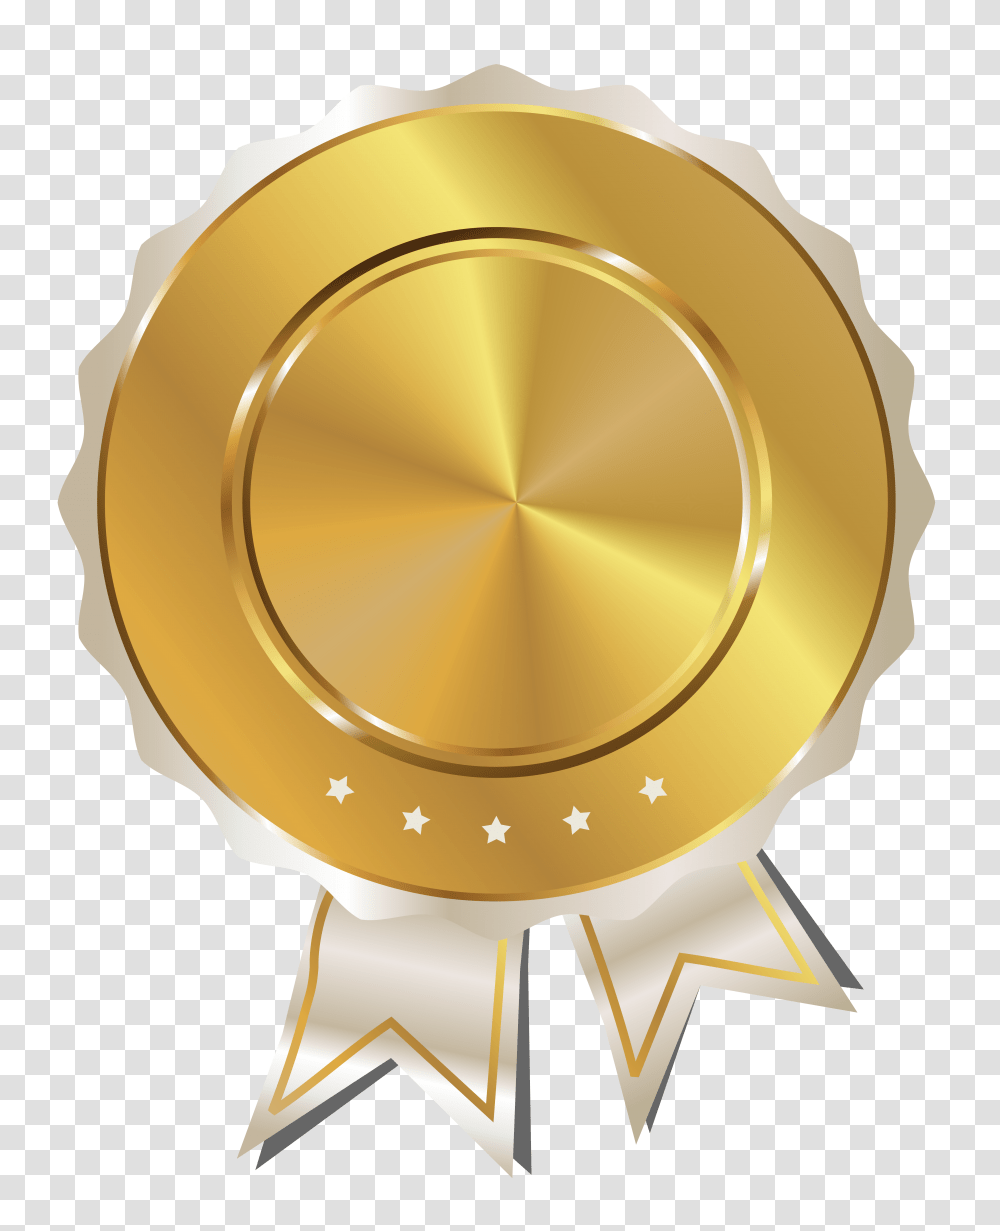 Stickers Dorados Oleh Laura Cuencajj Bingkai Objek Gambar Gold Certificate Logo, Trophy, Lamp, Gold Medal, Helmet Transparent Png